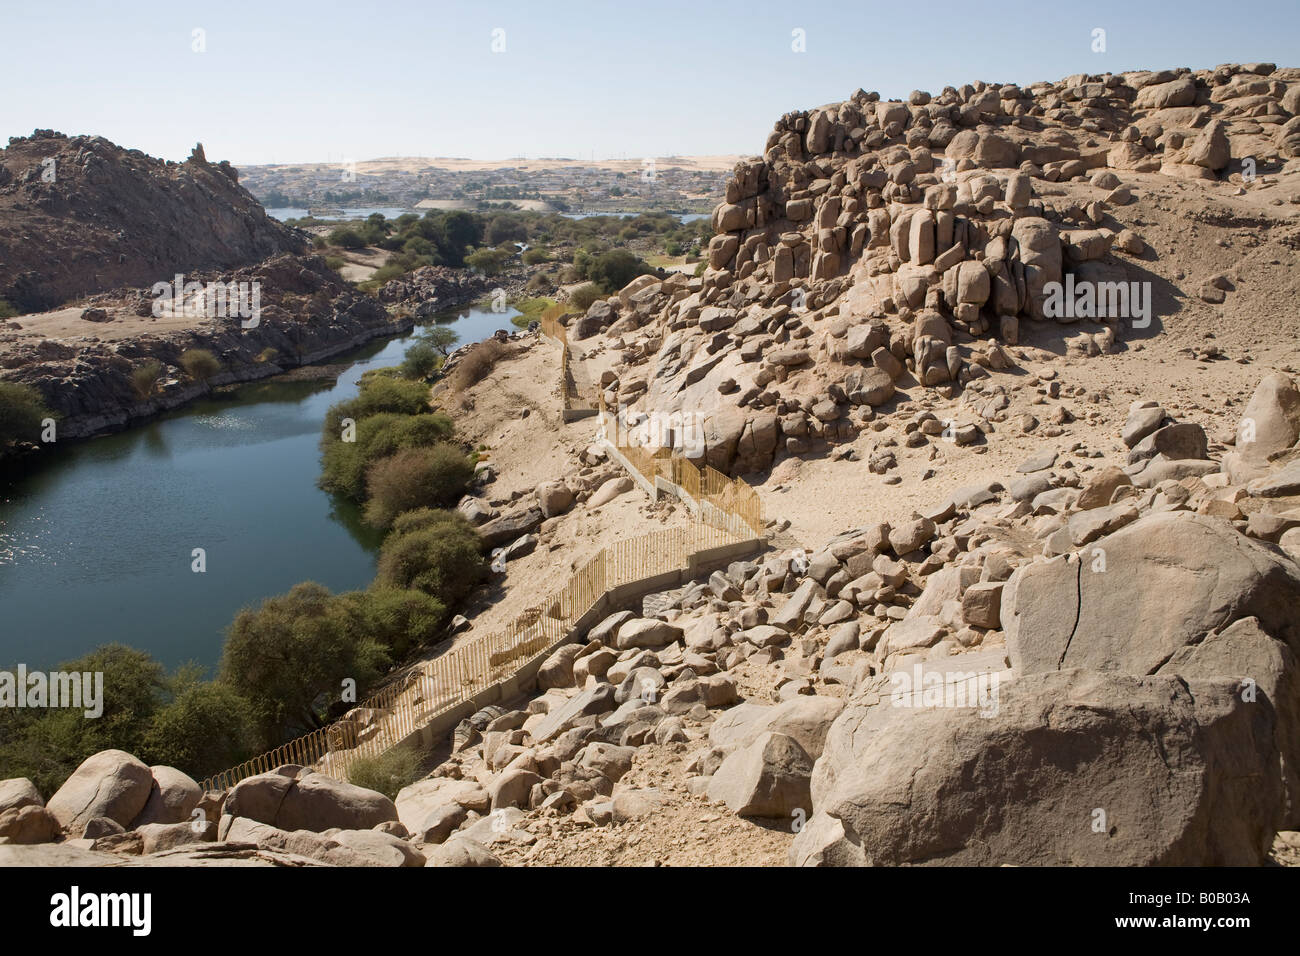 Une vue de l'île de Sehel au cours de la première cataracte du Nil, à Assouan, Egypte. Banque D'Images